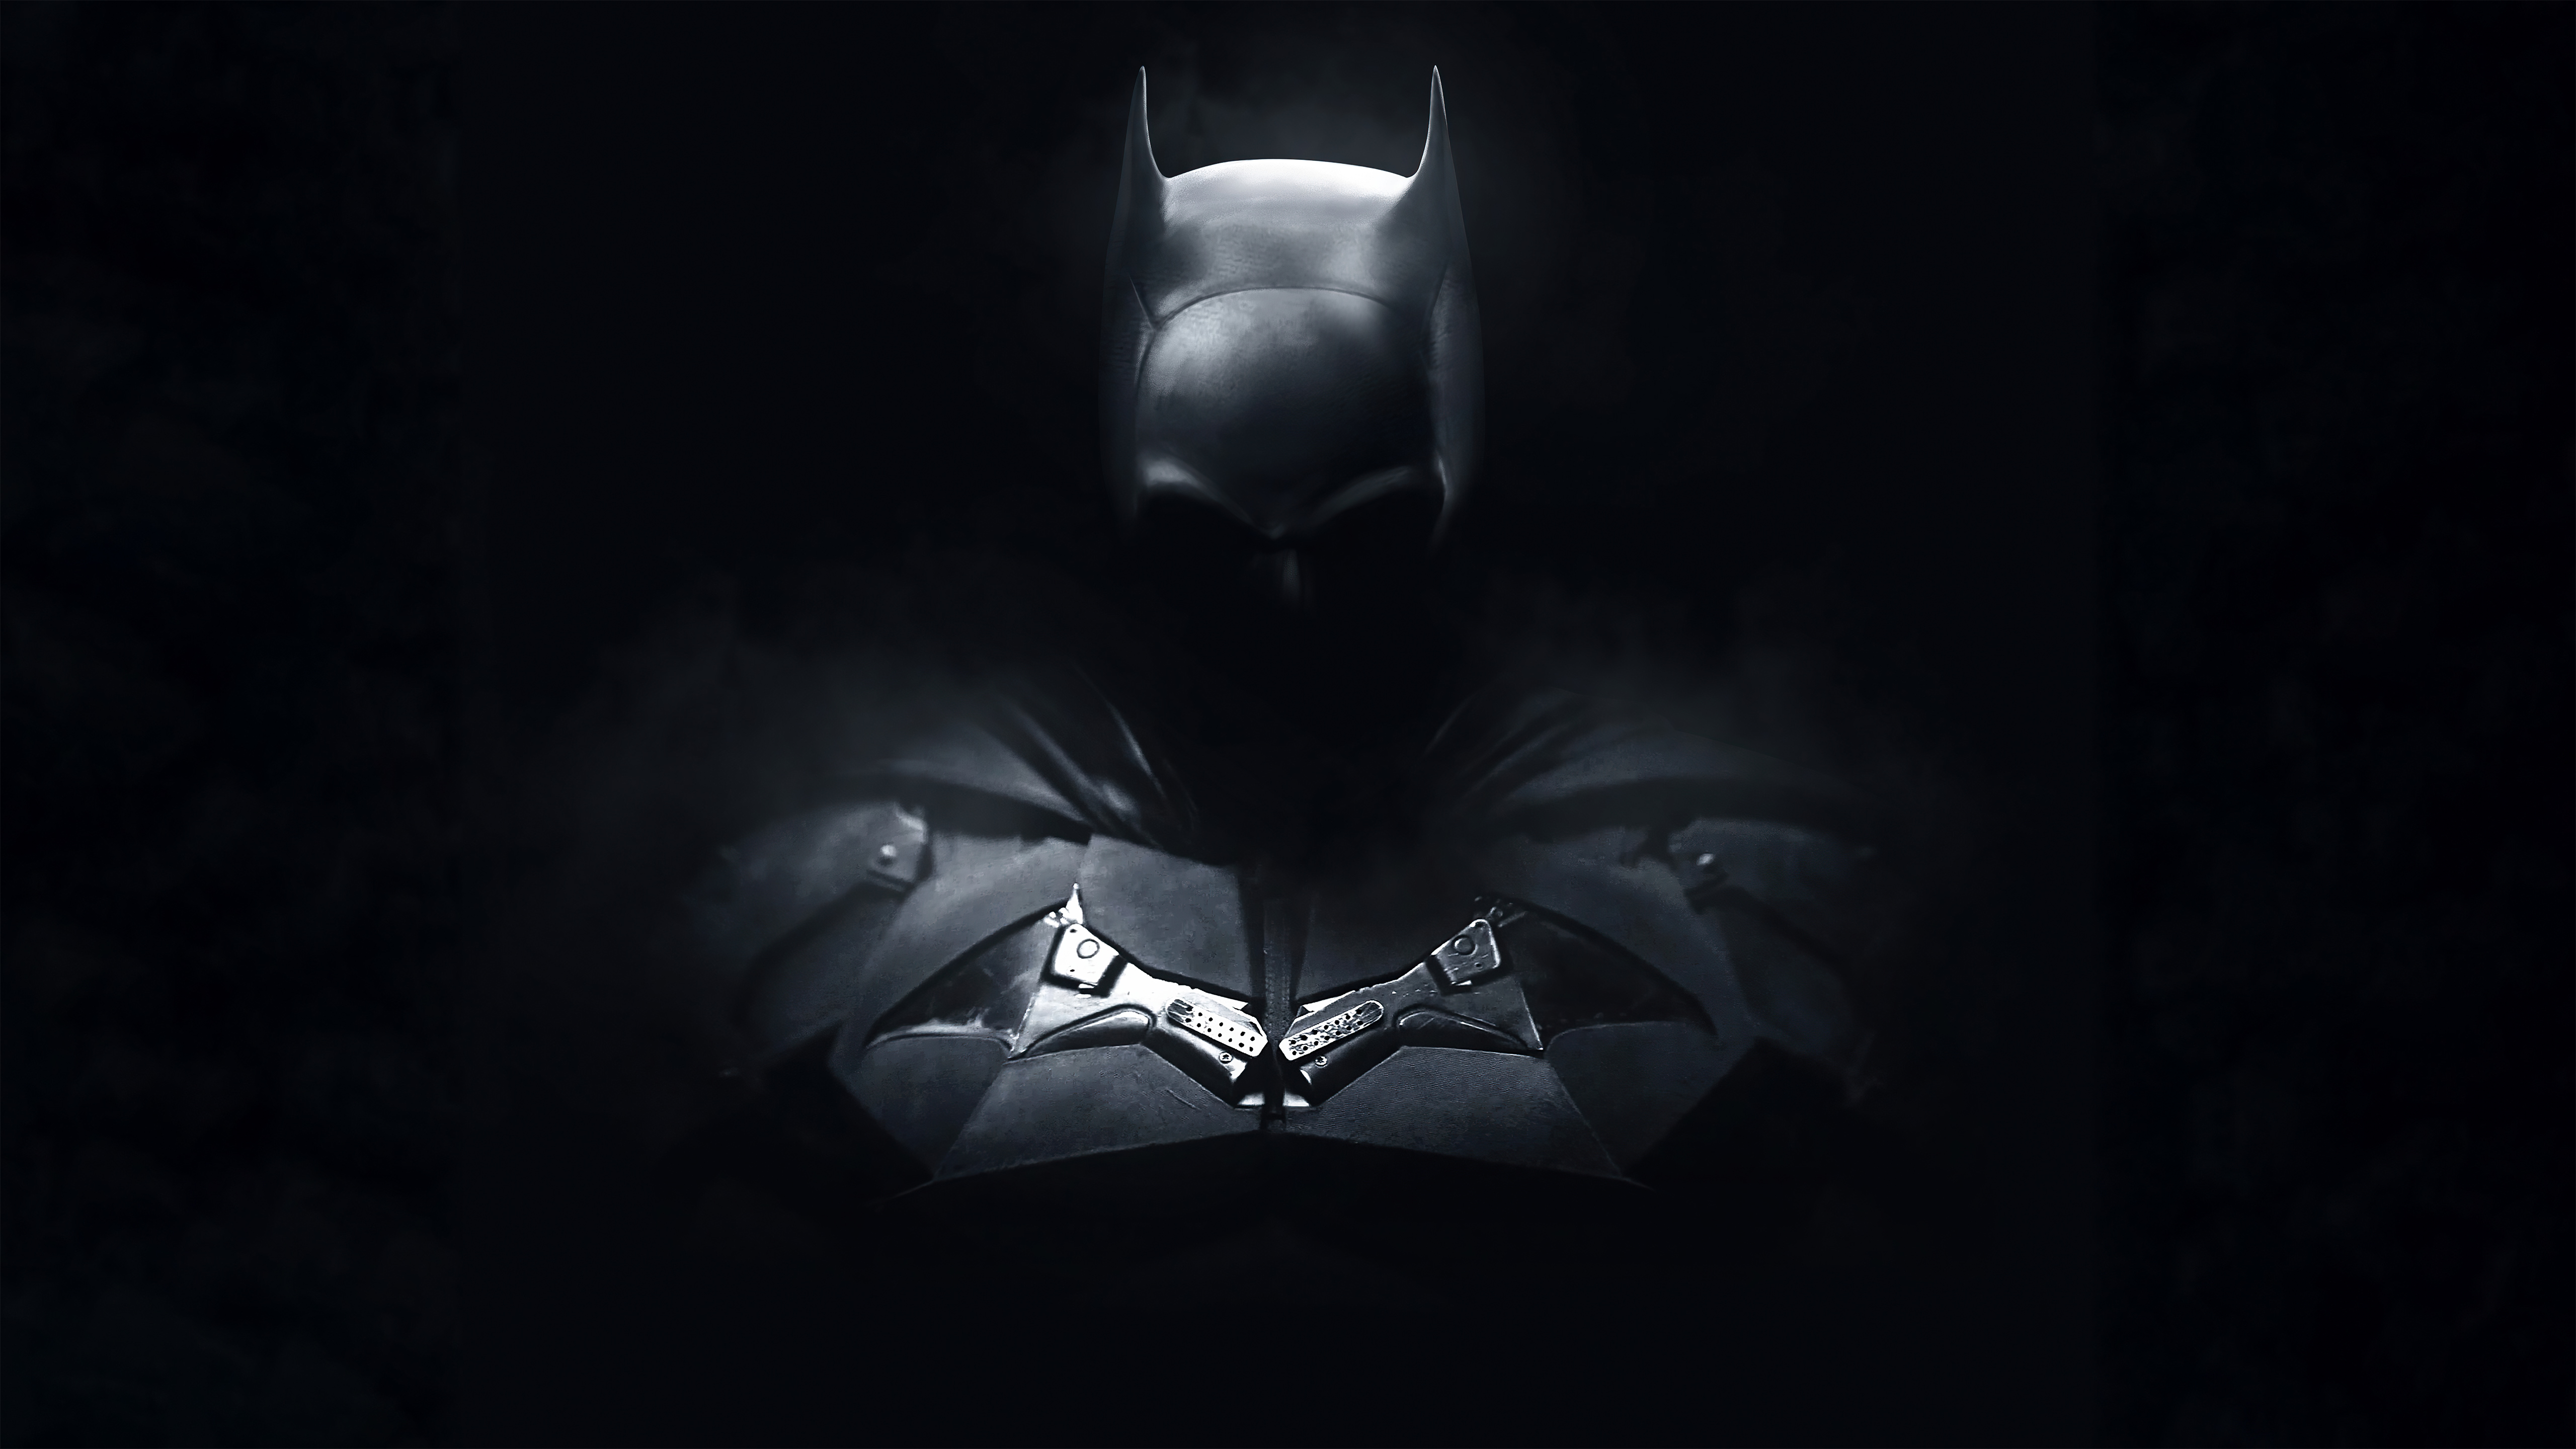 Những hình ảnh của Batman đã và đang trở thành các biểu tượng của thế giới siêu anh hùng. Tham gia vào thế giới của Batman với những chi tiết tinh tế và đa dạng về phong cách. Từ Batman đen cơ bản đến những phiên bản đầy sáng tạo hơn, bạn sẽ tìm thấy mọi thứ ở đây.